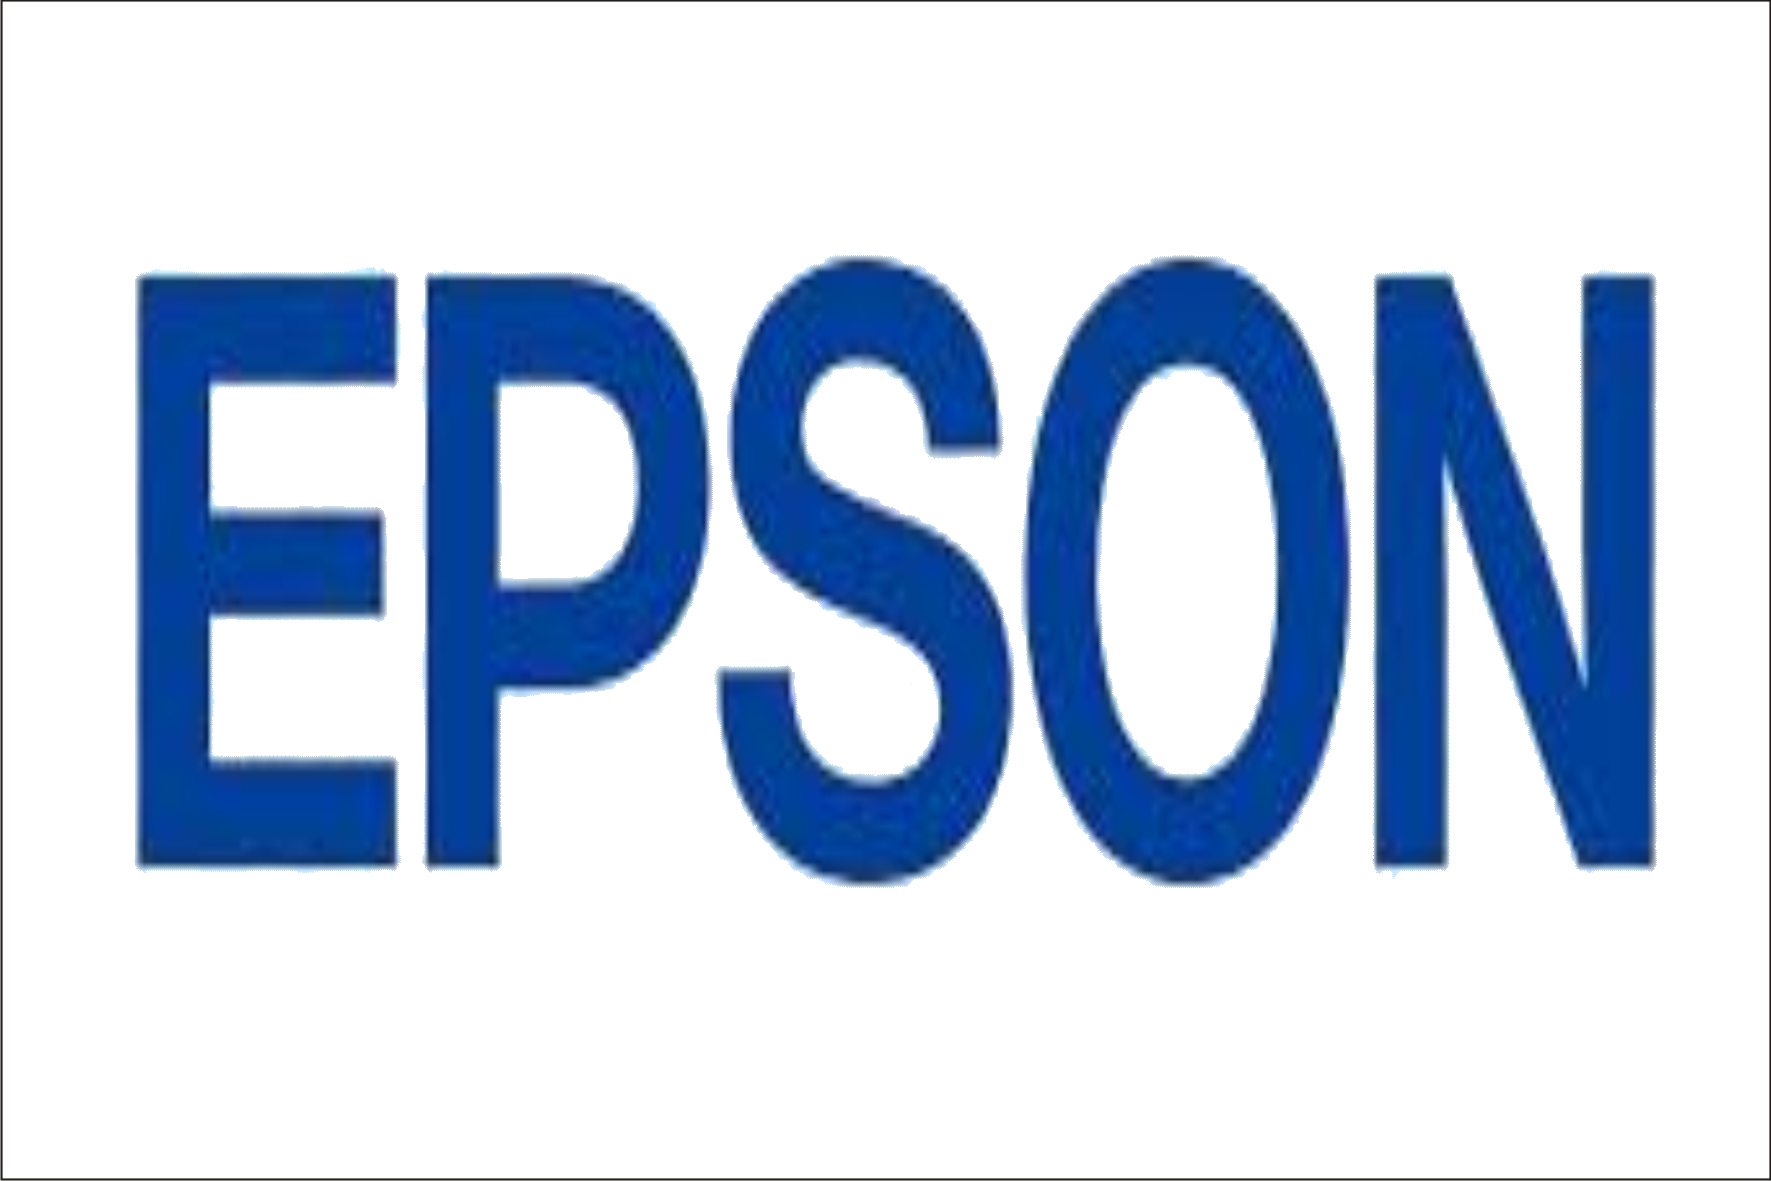 EPSON Indonesia